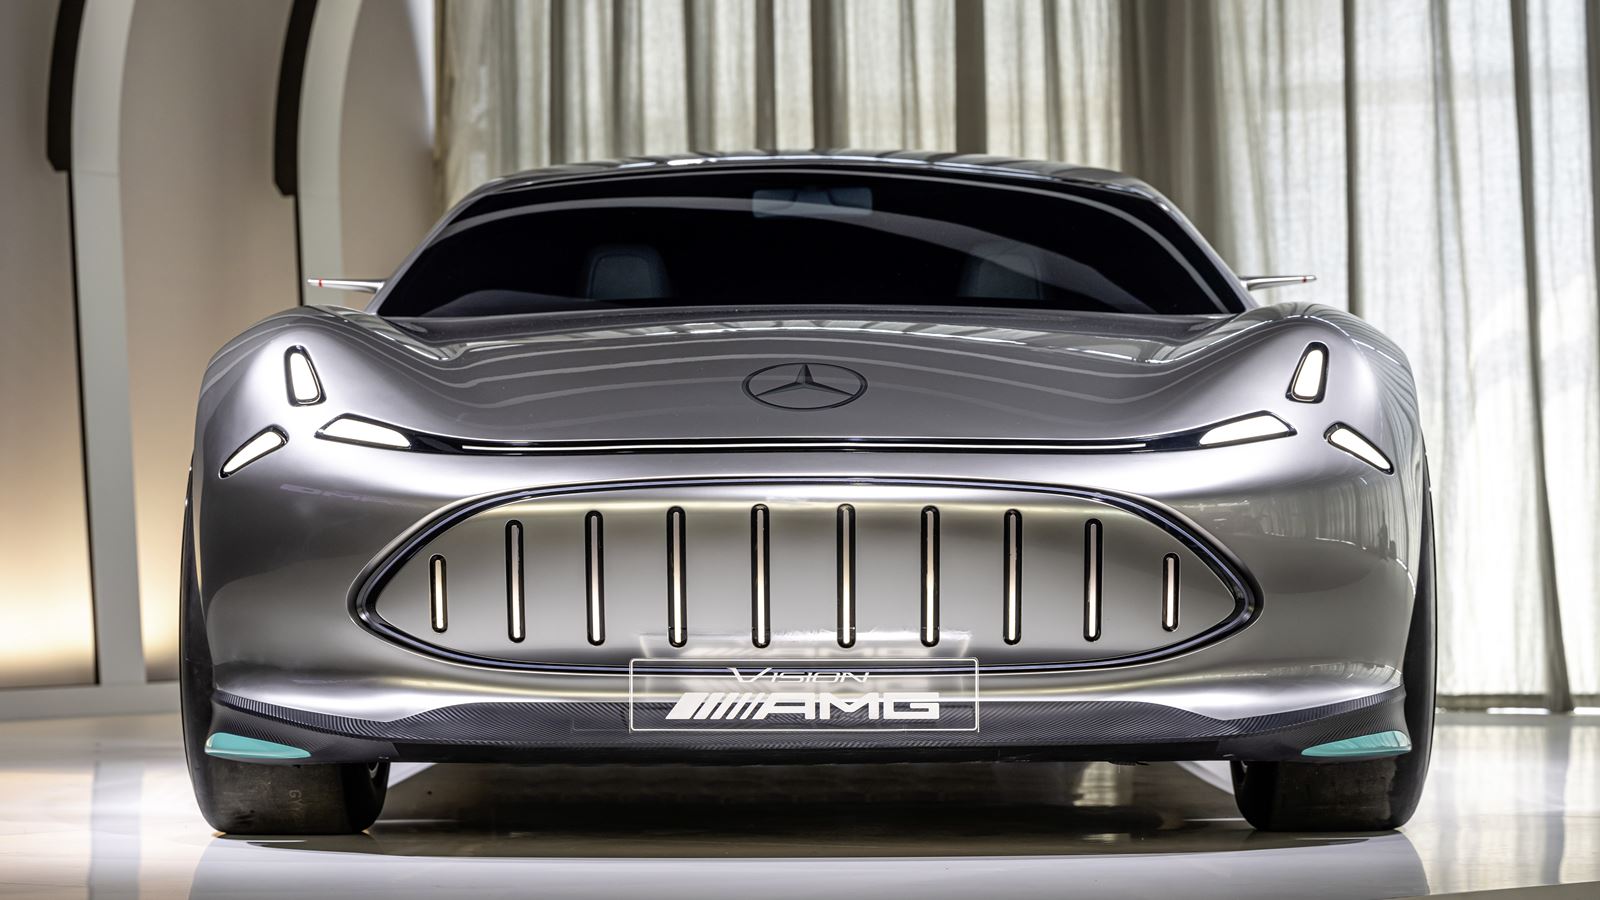 Mercedes Vision AMG show car